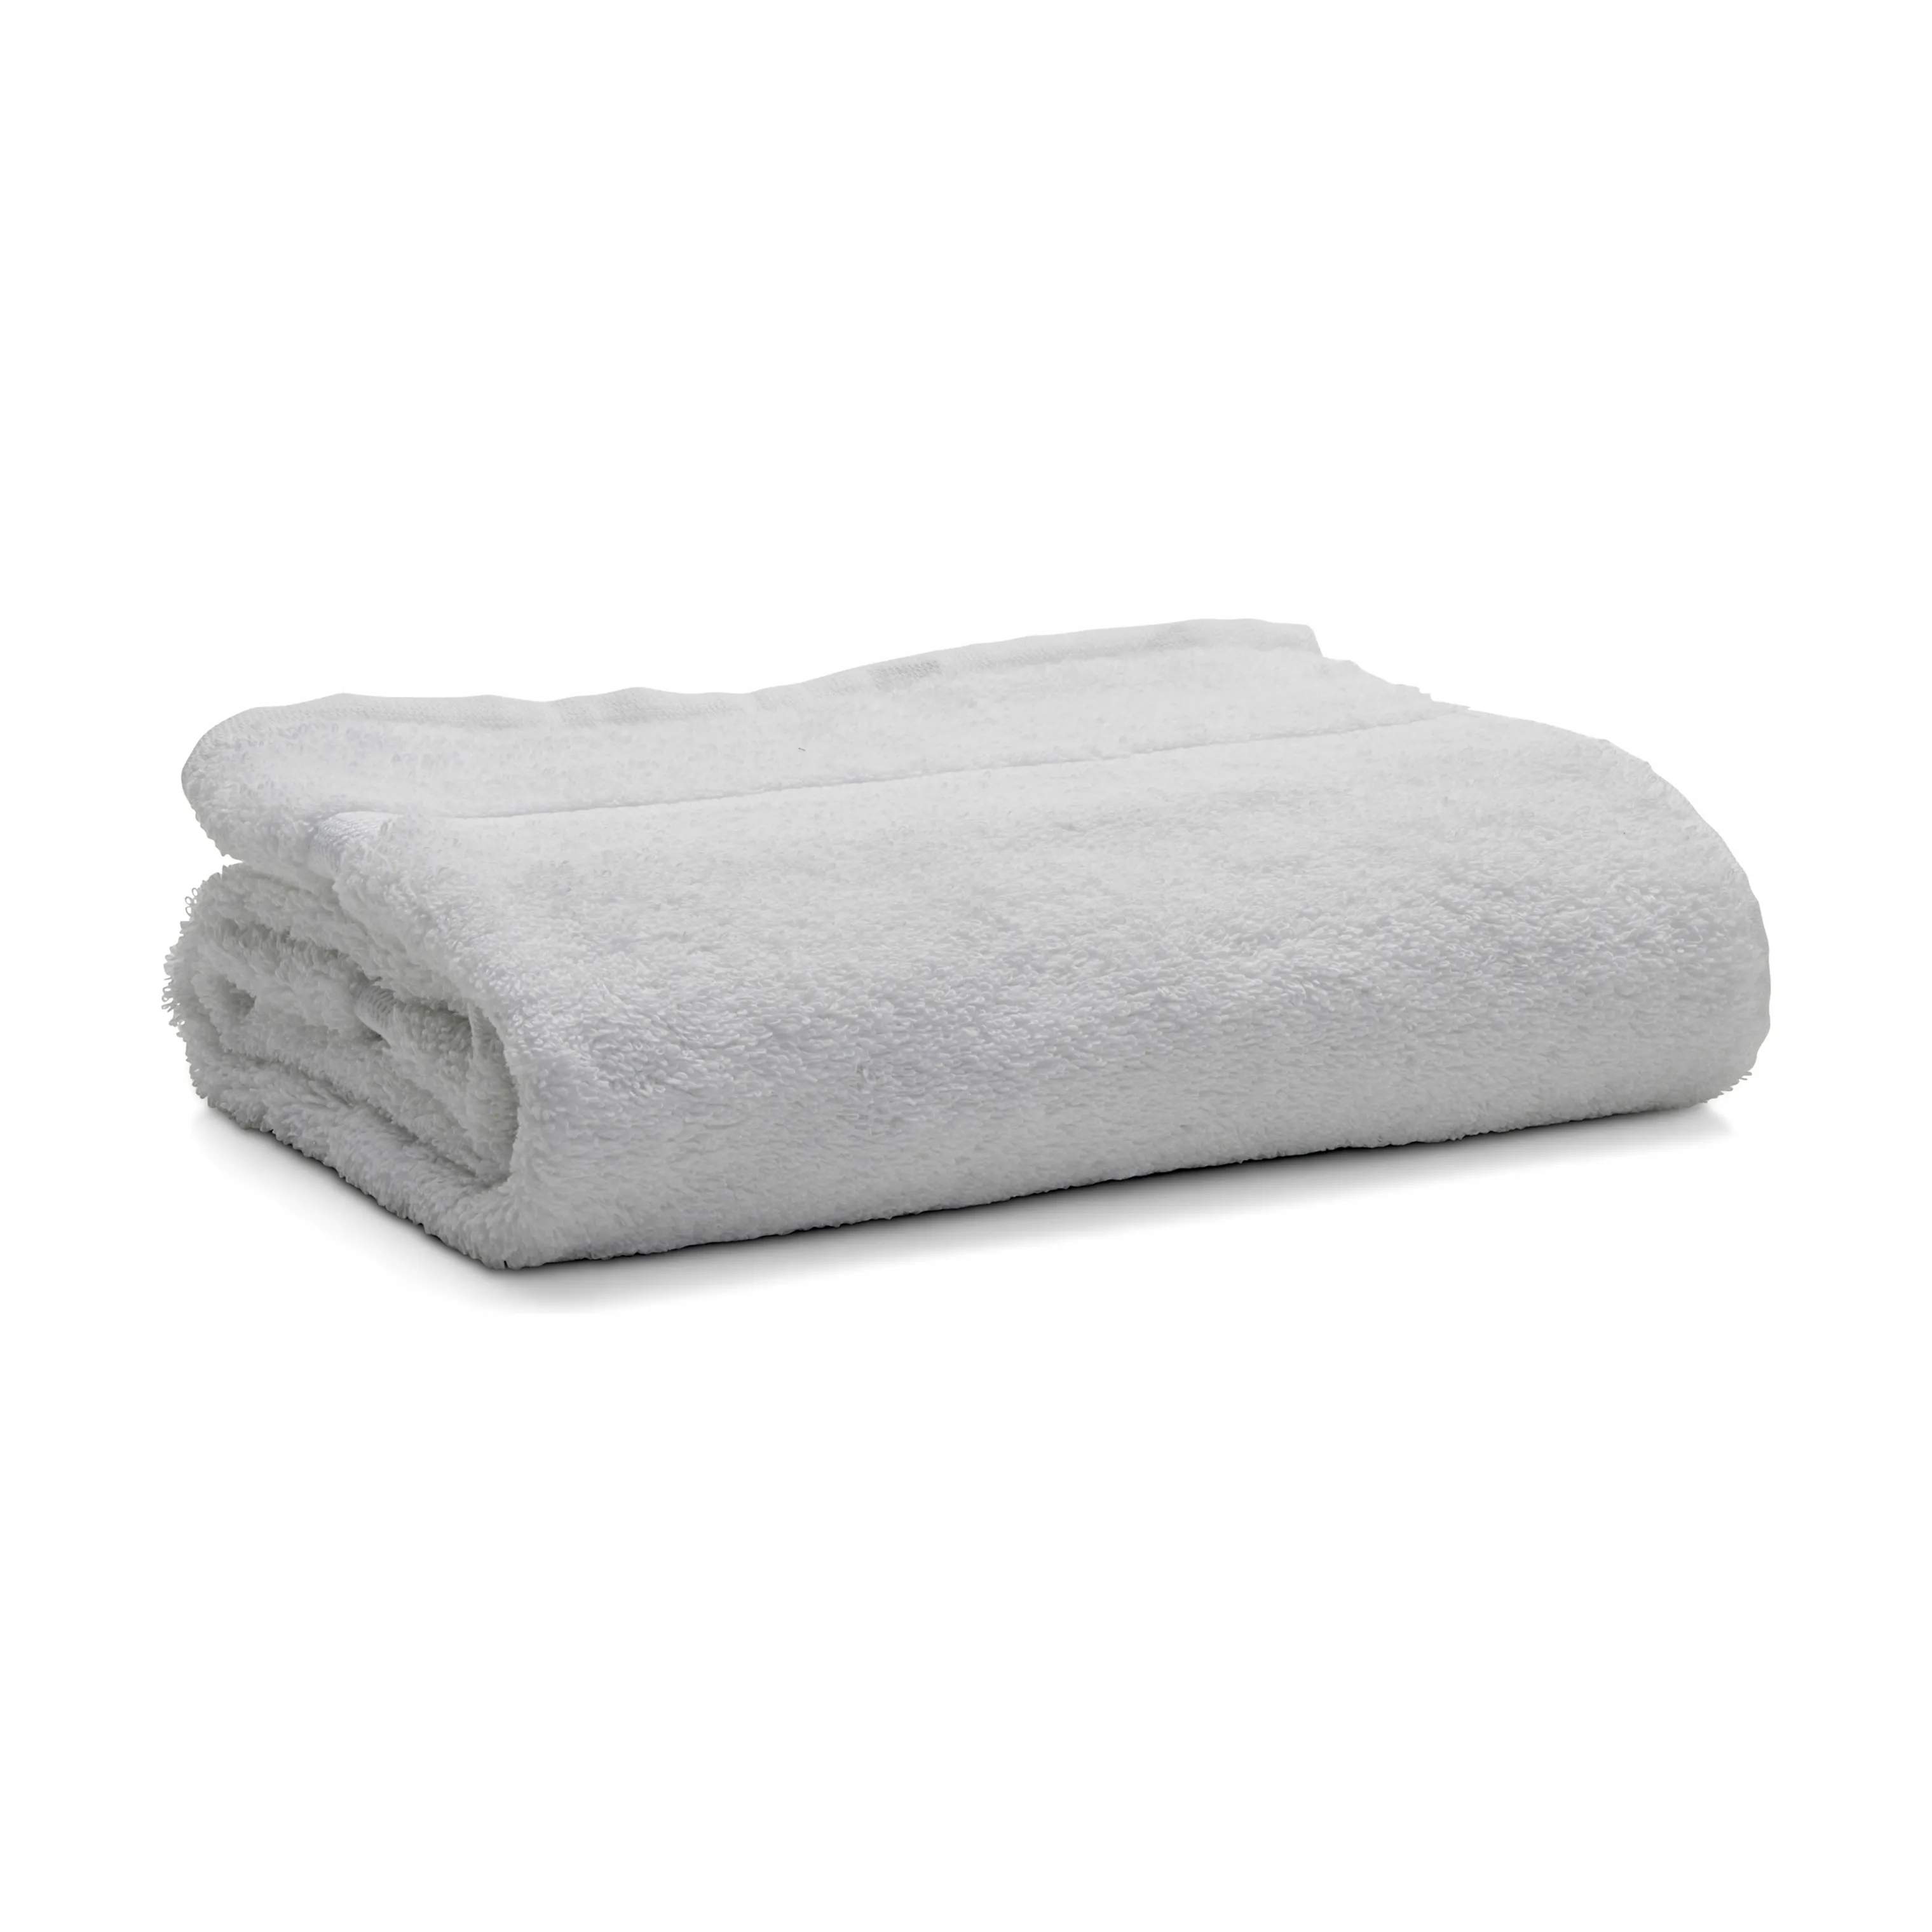 Håndklæde, hvid, large